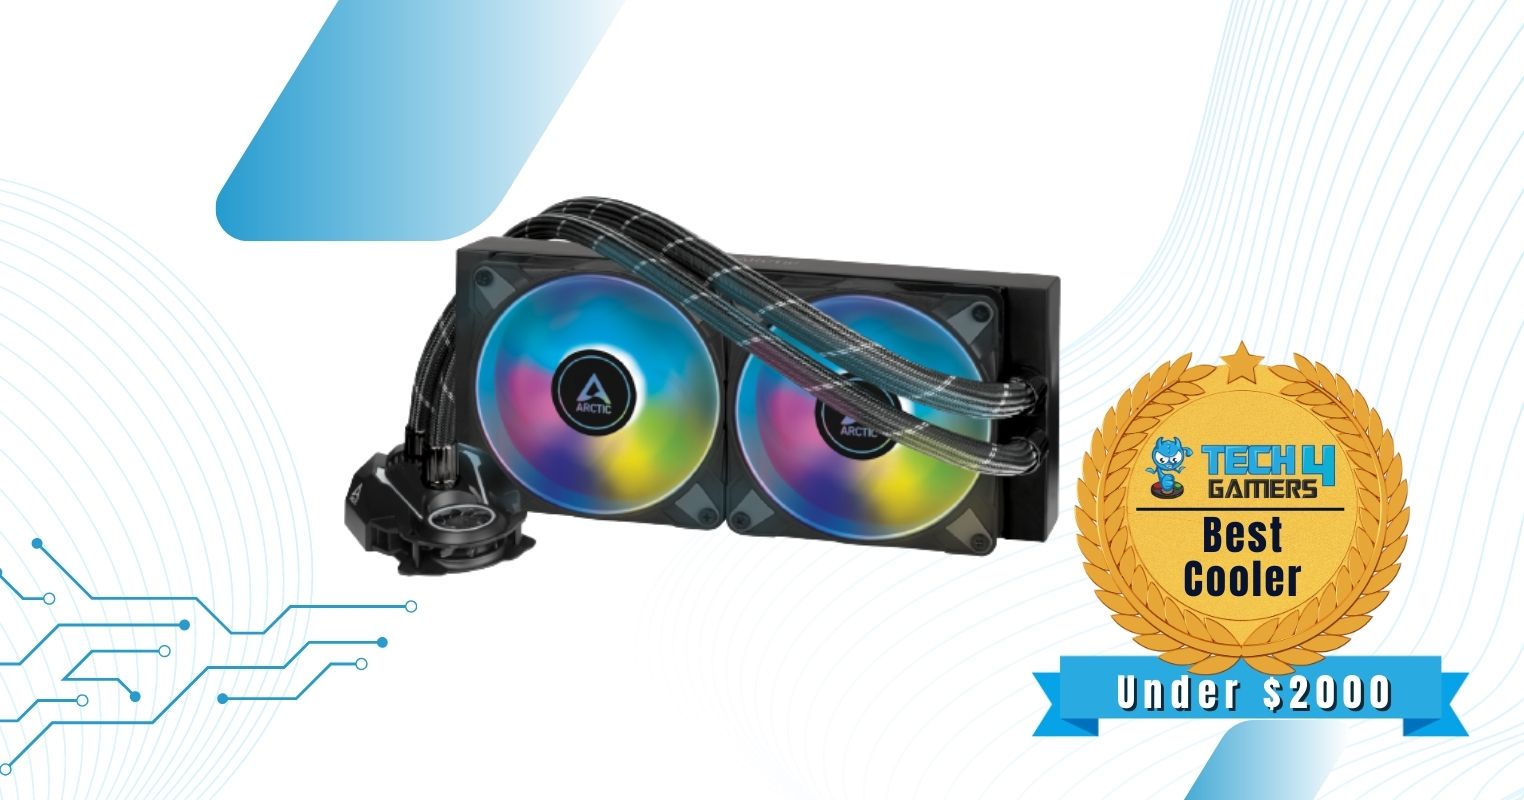 Best Gaming PC Under $2000 Cooler - ARCTIC Liquid Freezer II 240 A-RGB